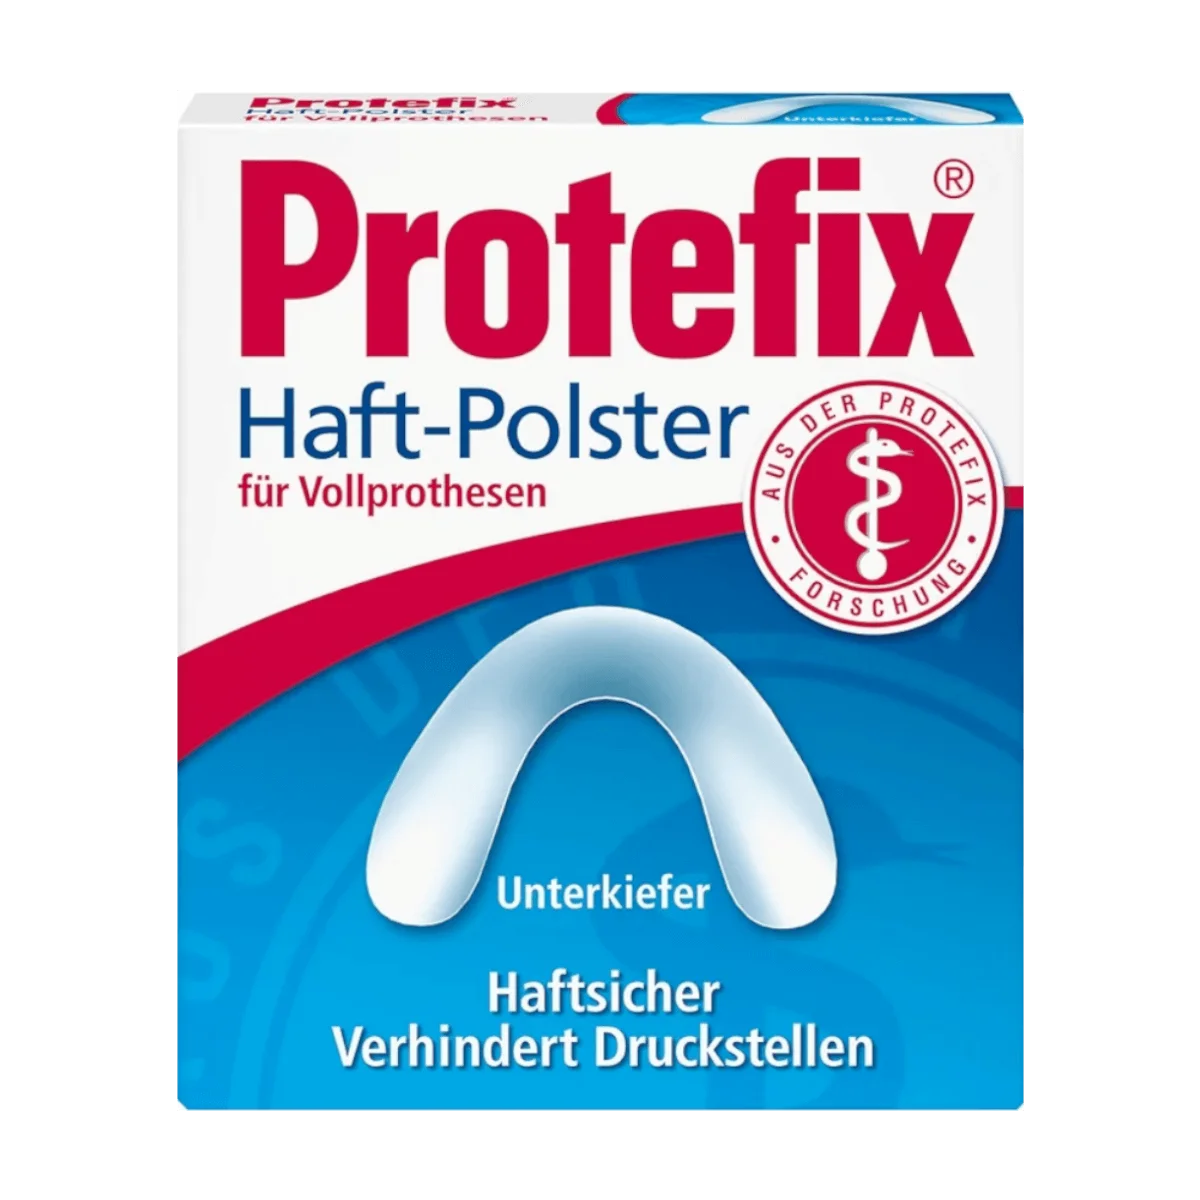 Protefix Haft-Polster für Unterkiefer, 30 Stk